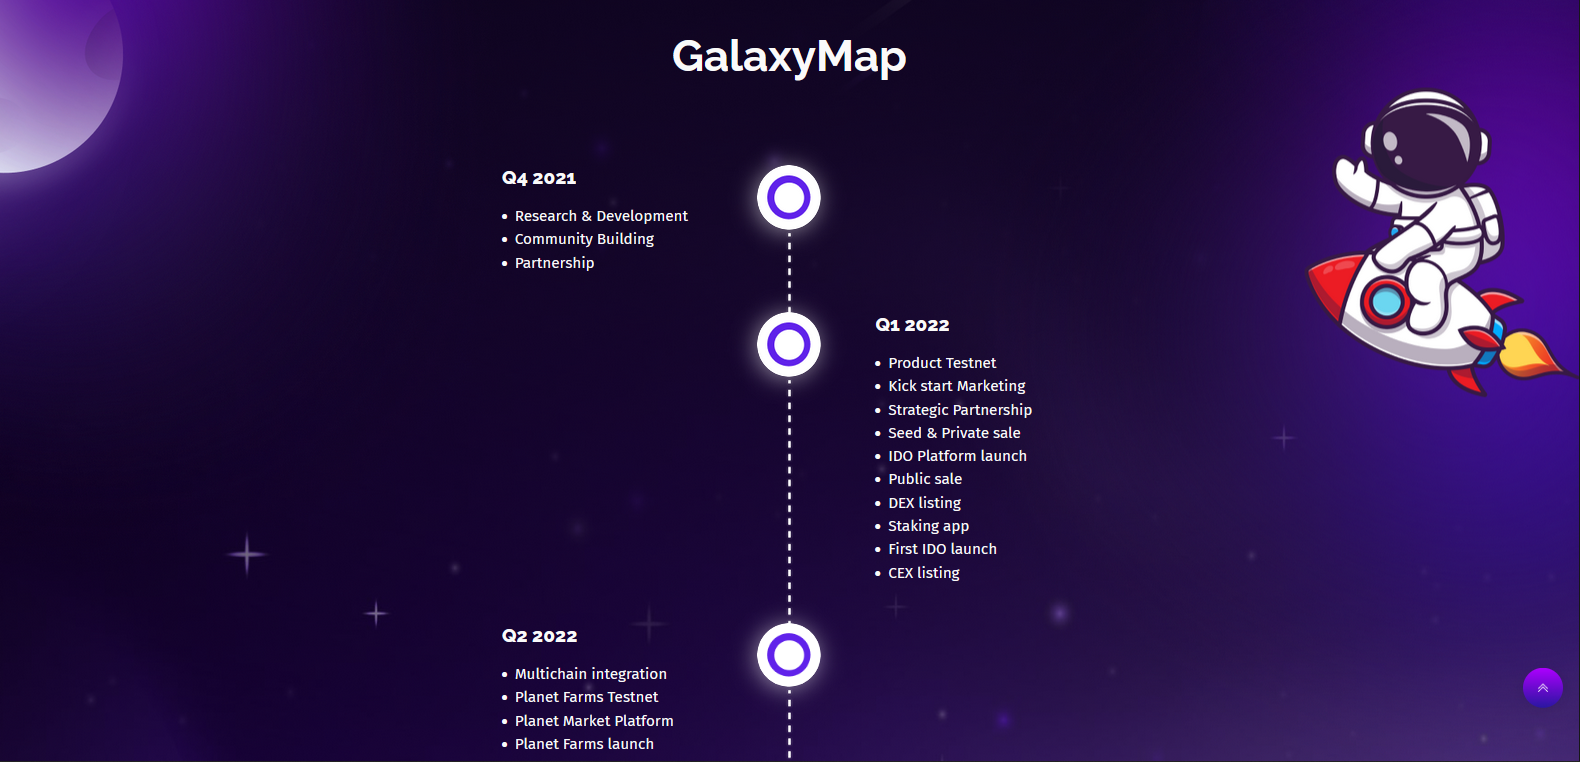 GalaxyMap